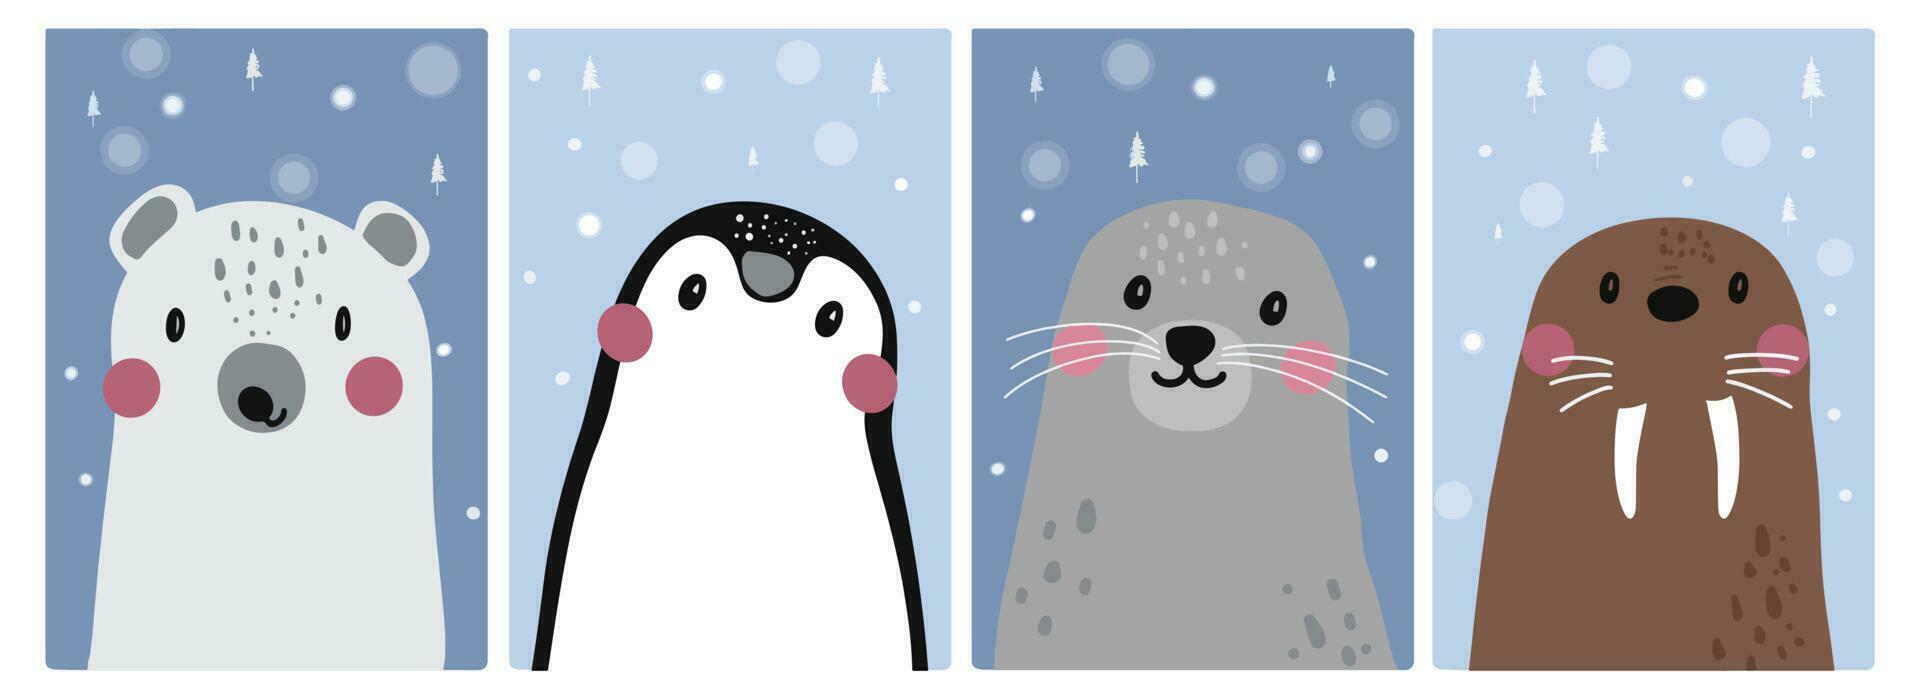 cartone animato animali freddo la zona acquatico animale neve vettore